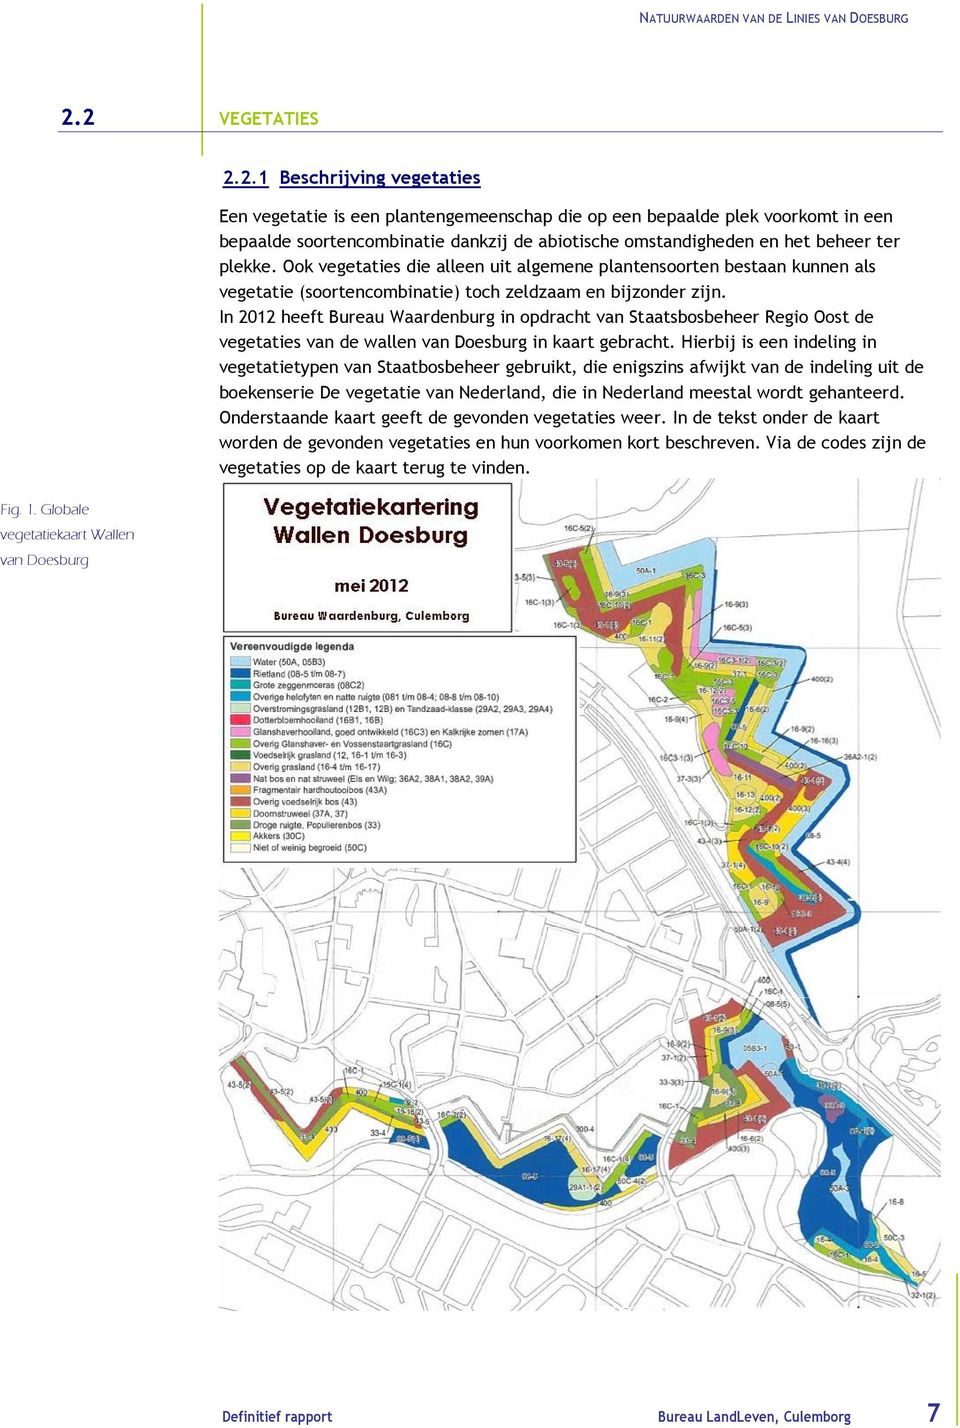 In 2012 heeft Bureau Waardenburg in opdracht van Staatsbosbeheer Regio Oost de vegetaties van de wallen van Doesburg in kaart gebracht.